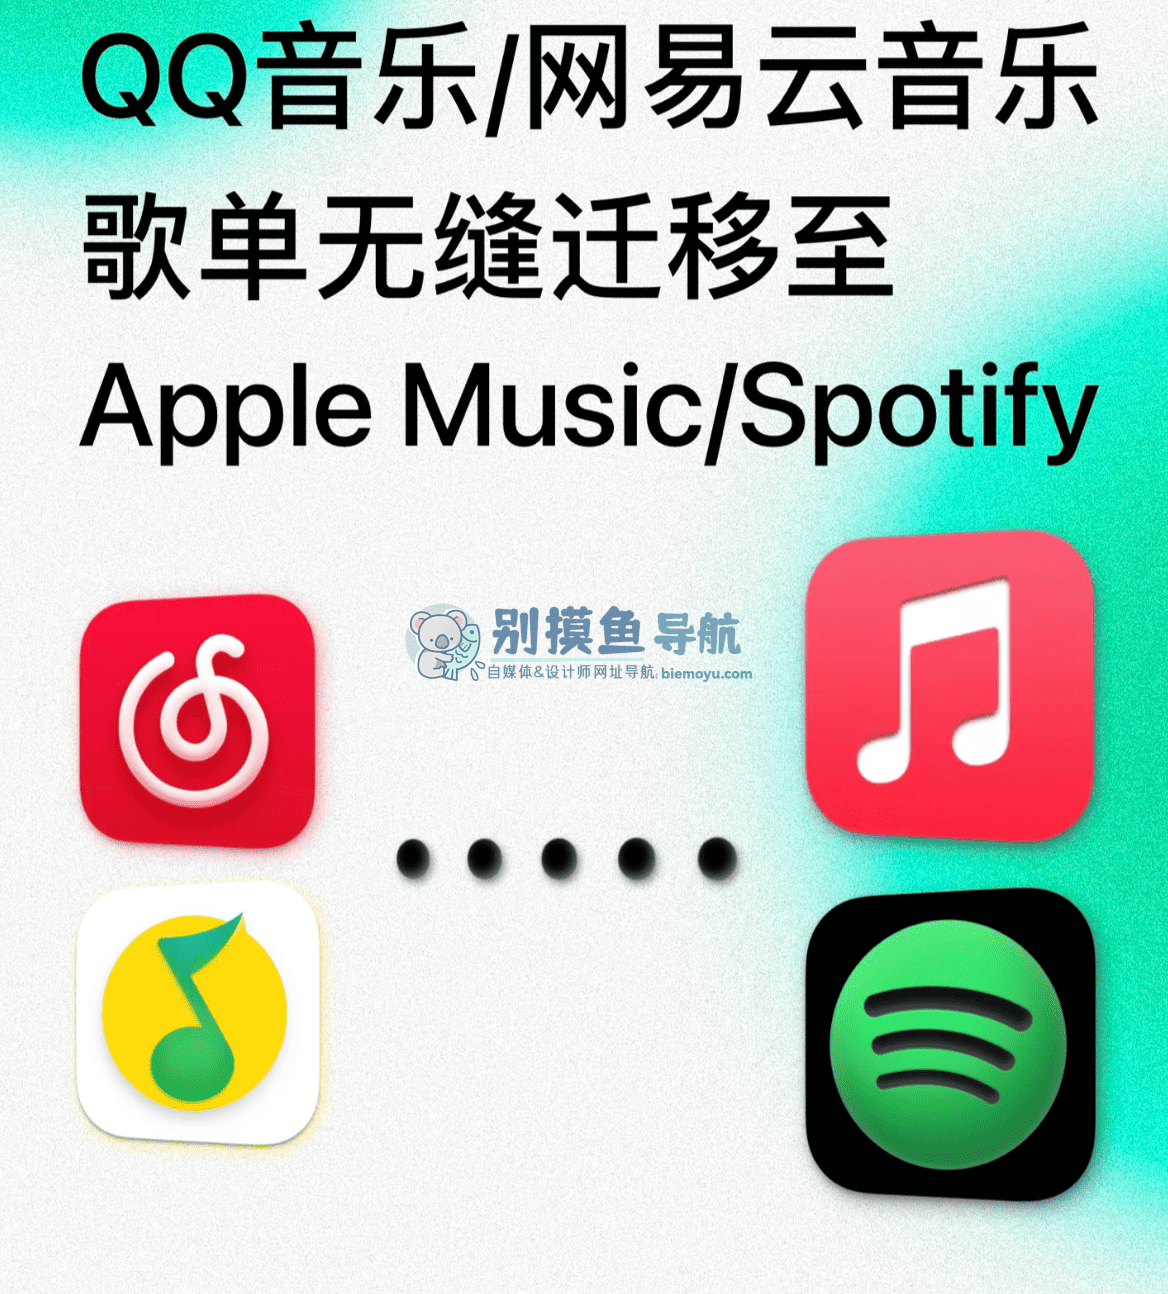 最新蘋果音樂免費6個月2023,apple music免費試用6個月活動怎麼領取教學